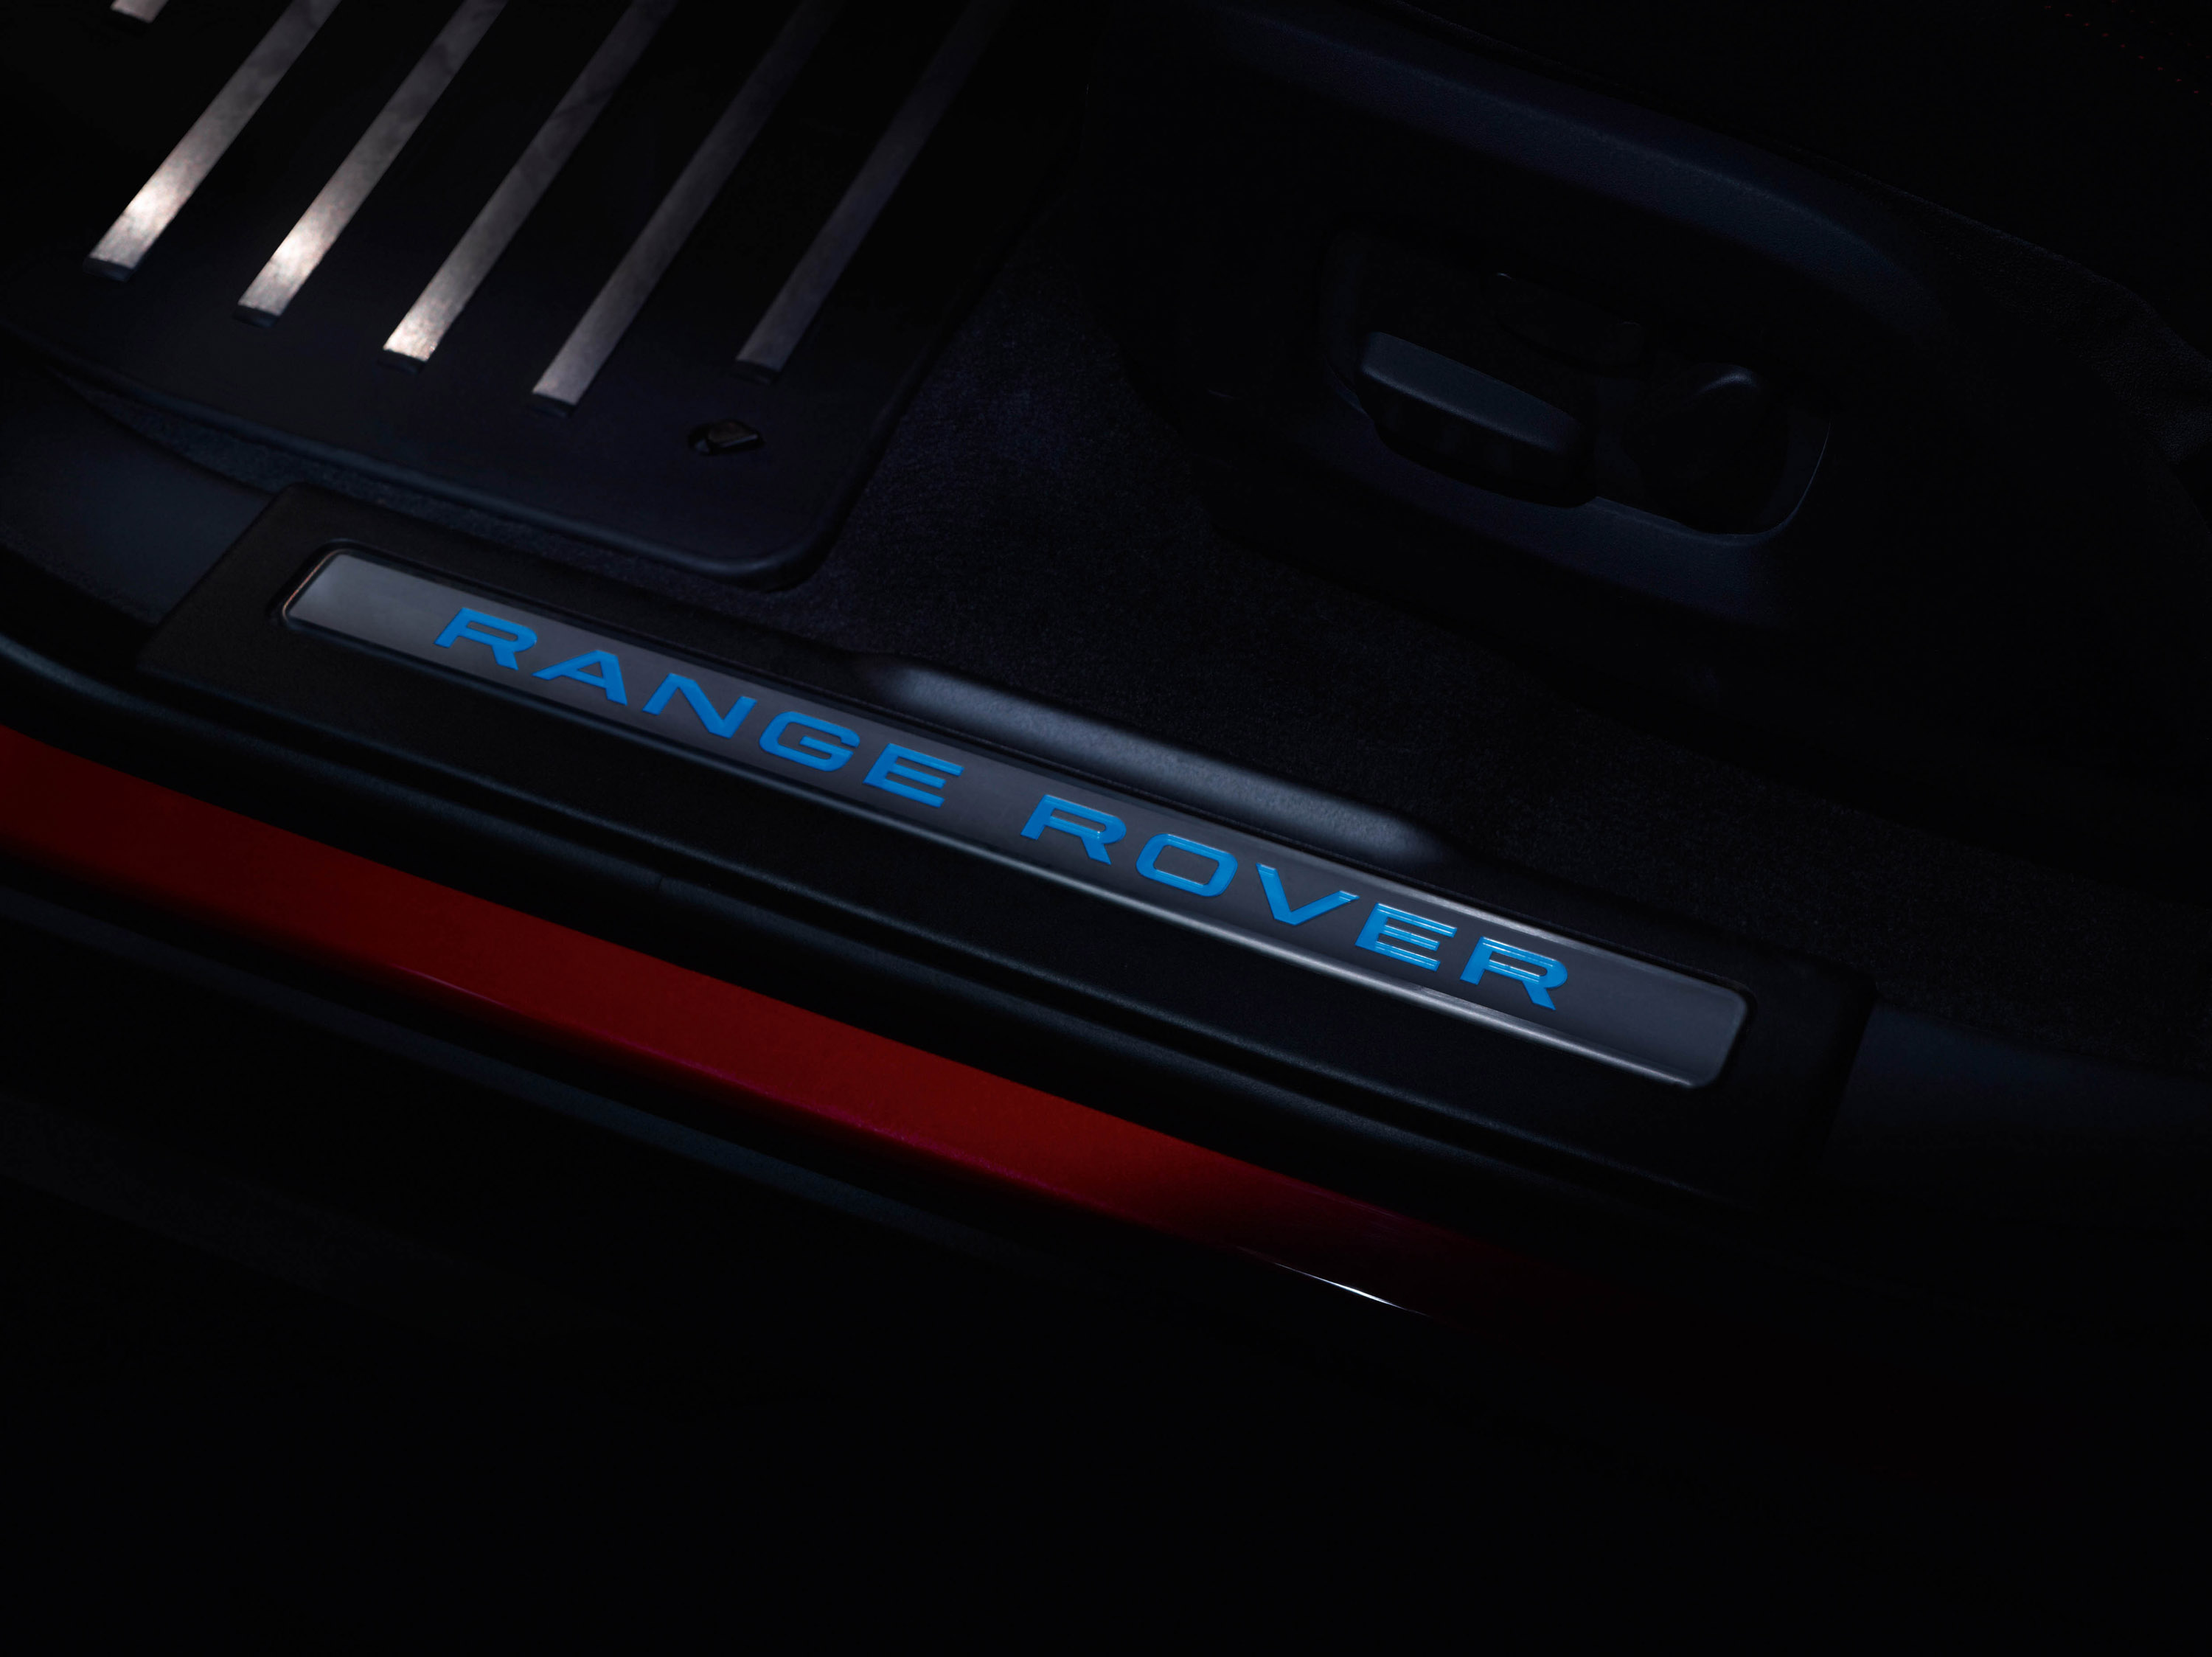 Range Rover Evoque 5-Door